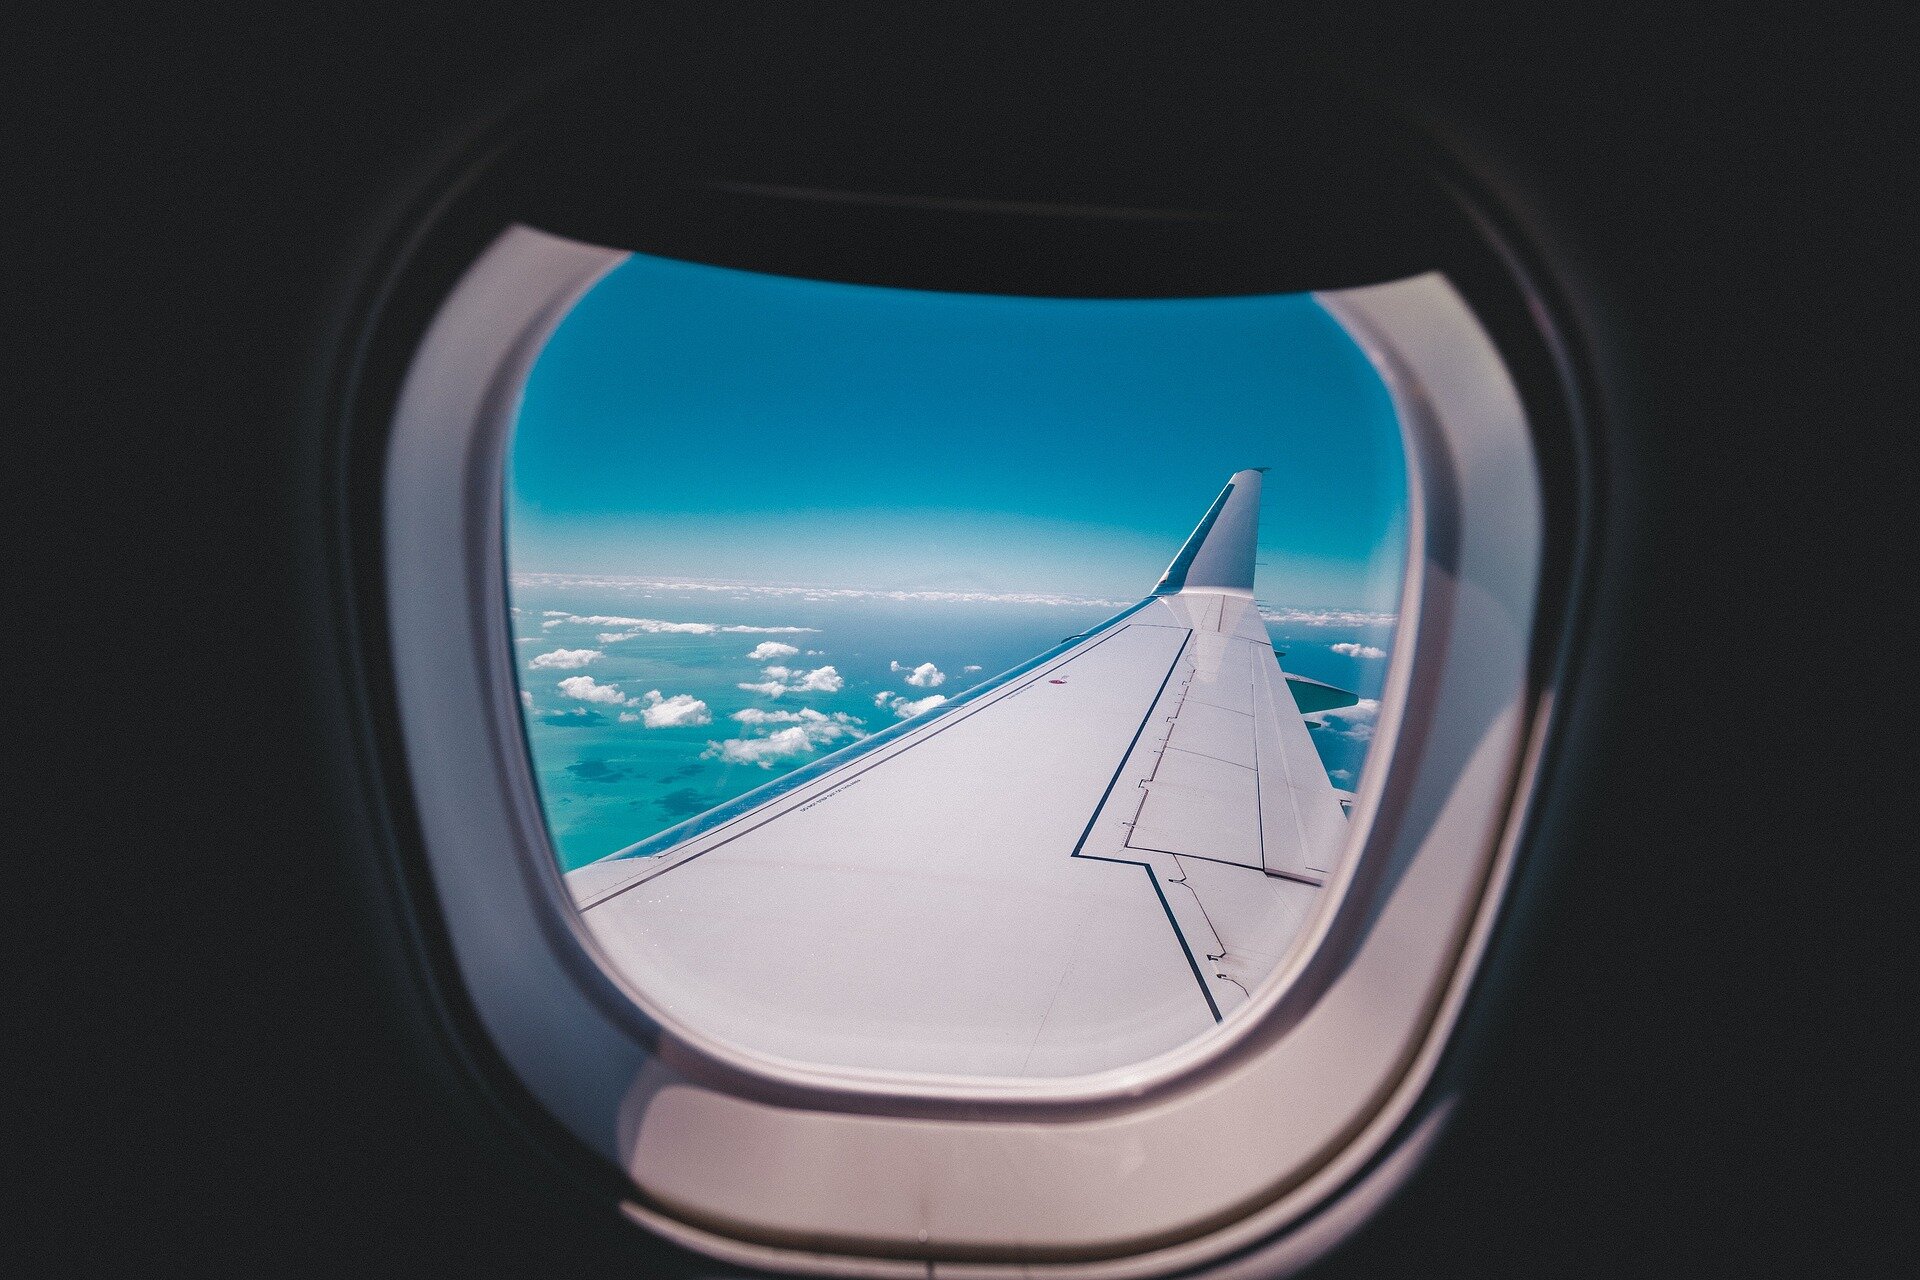 Zdjęcie przedstawiające okno samolotu z widokiem na skrzydło błękitne niebo, poniżej samolotu zaś oświetlone słońcem chmury.